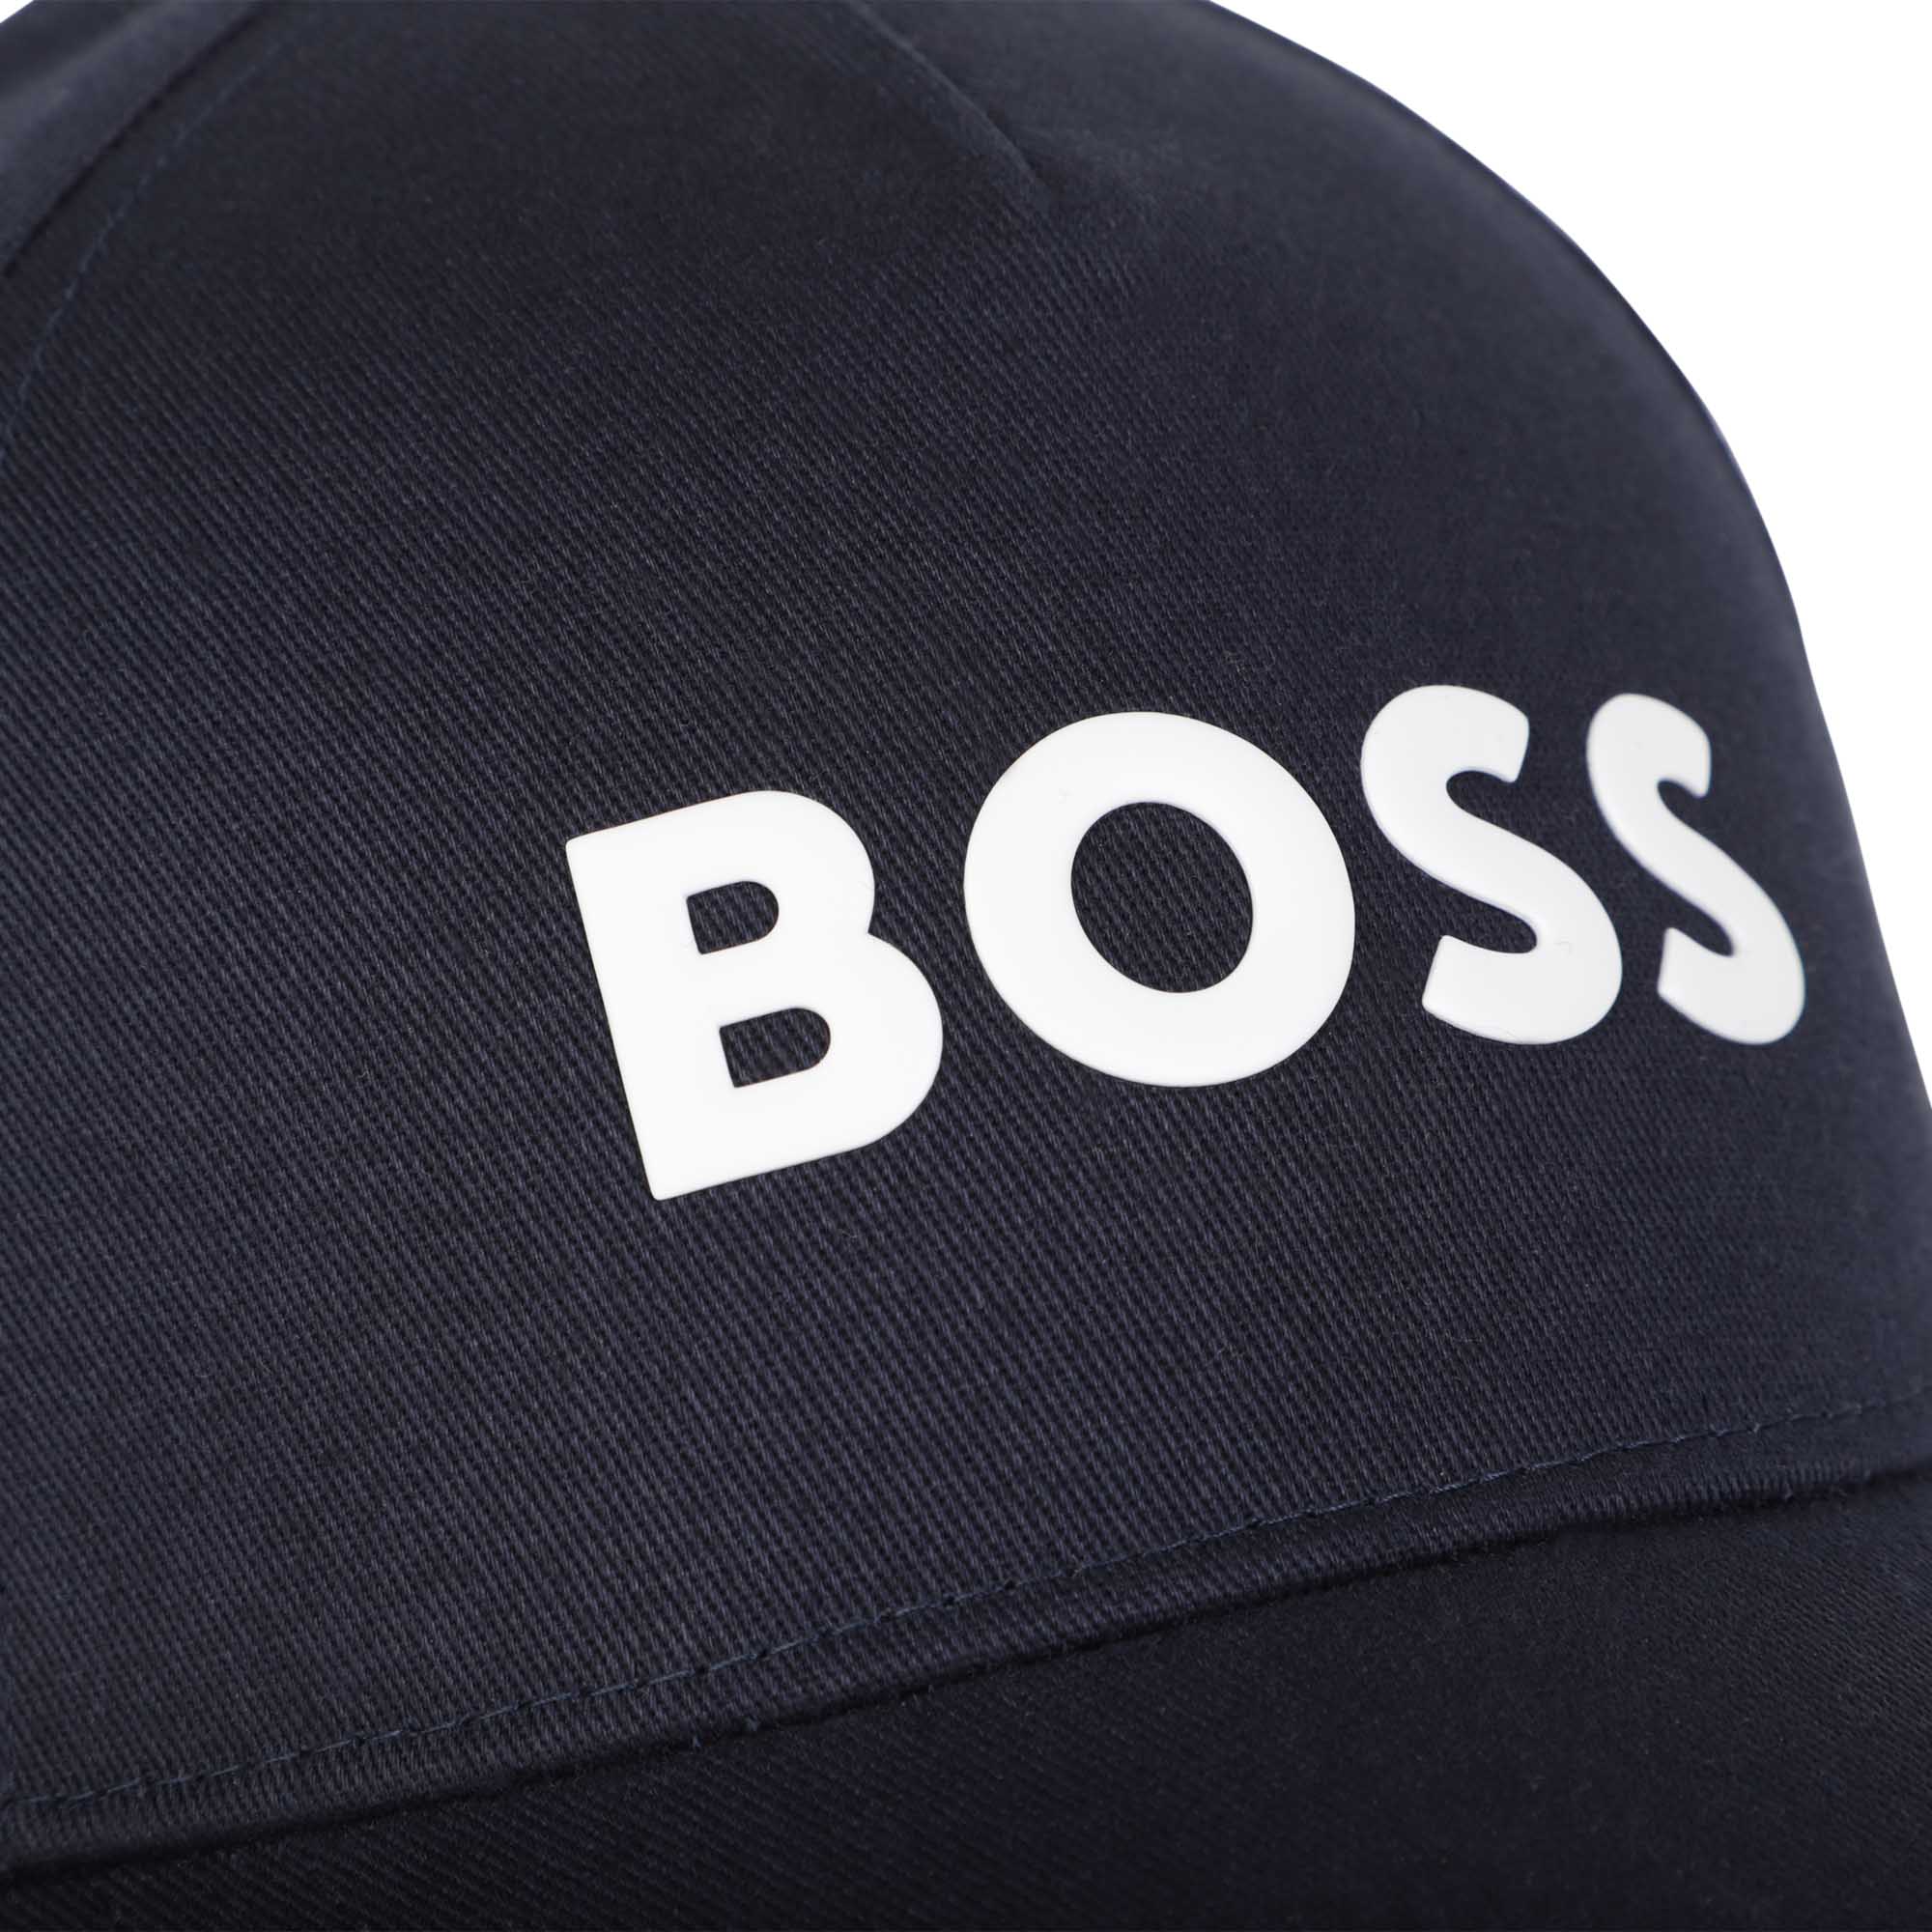 Boss boys black cap close up of logo